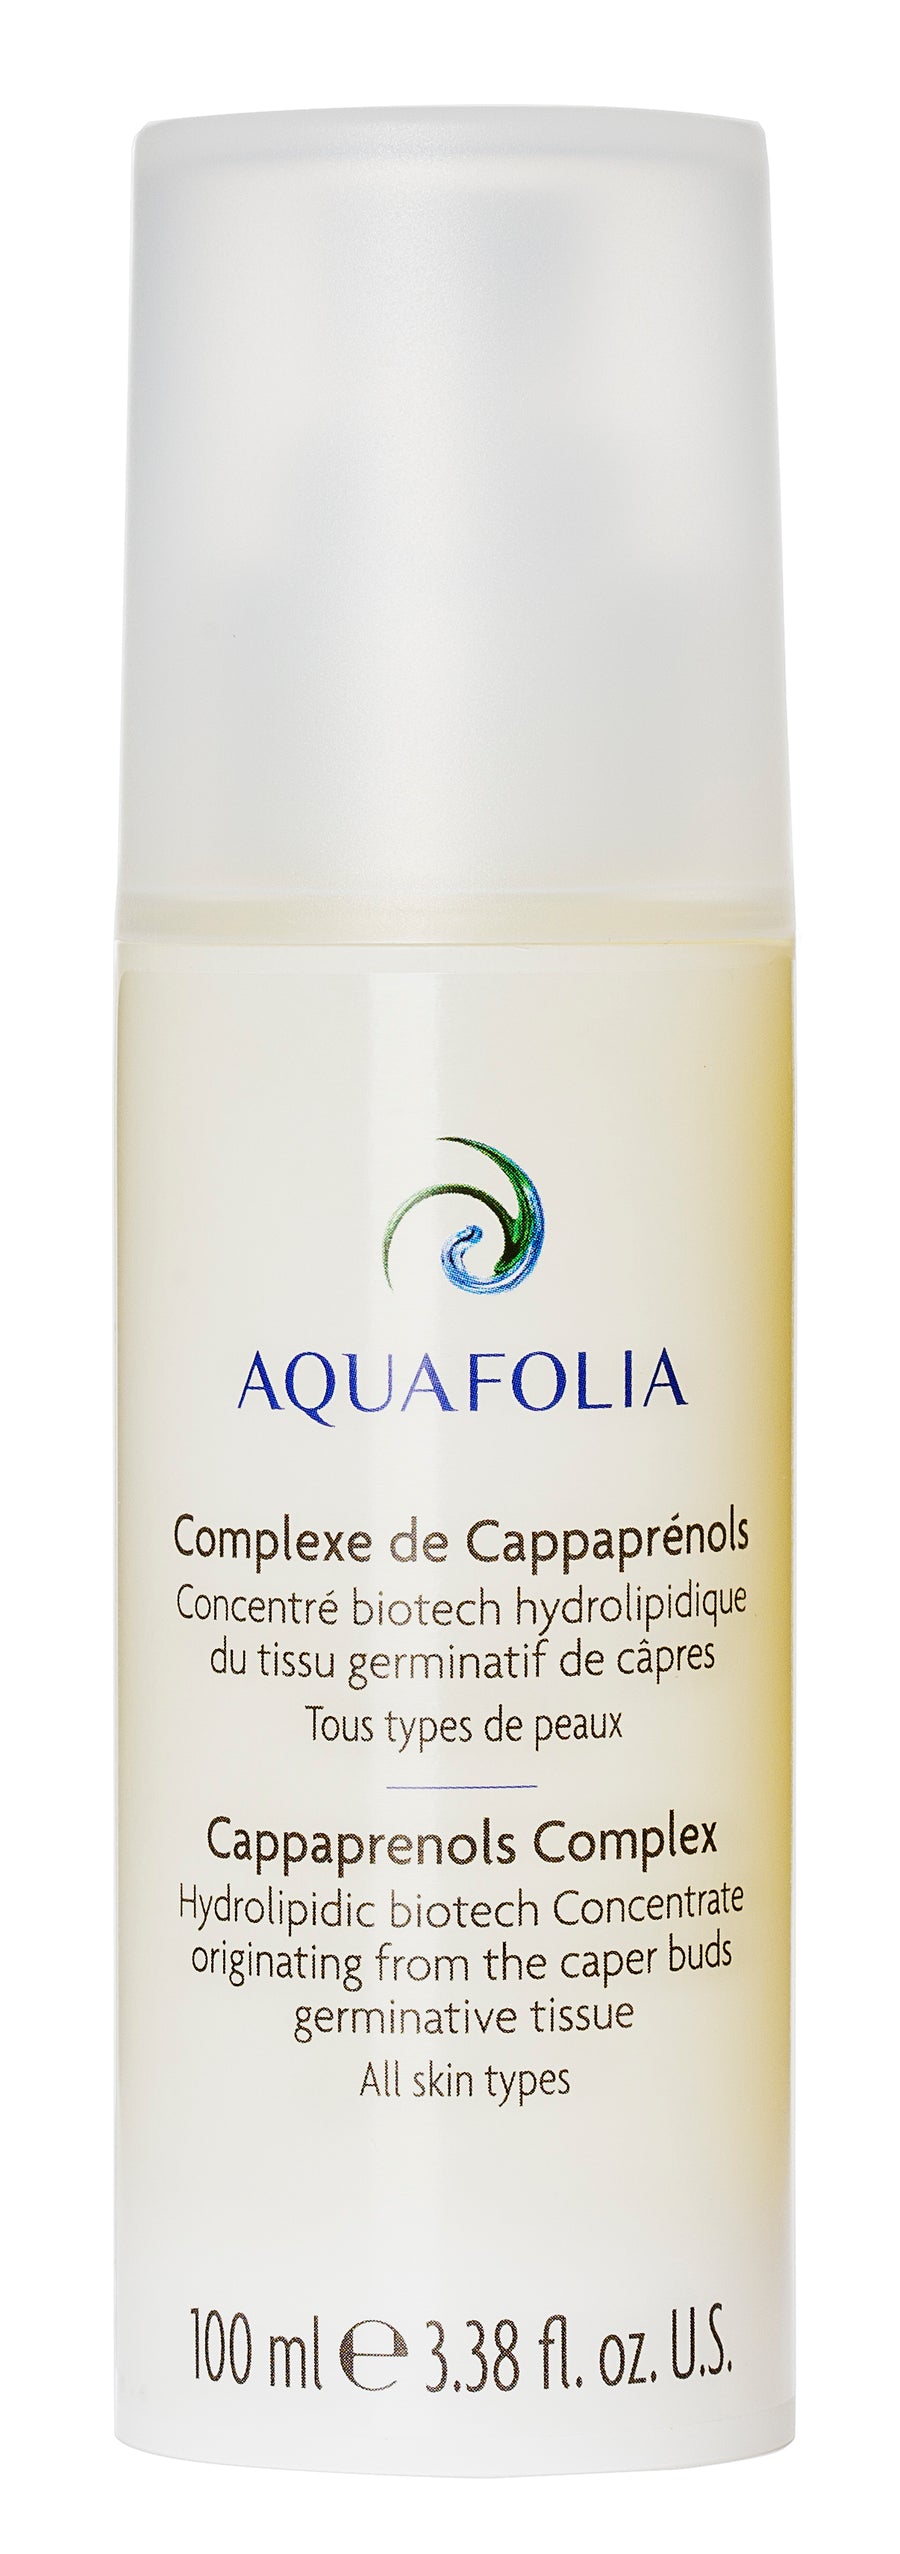 Aquafolia- Complexe de Cappaprénols- Concept AquaNUTRIA